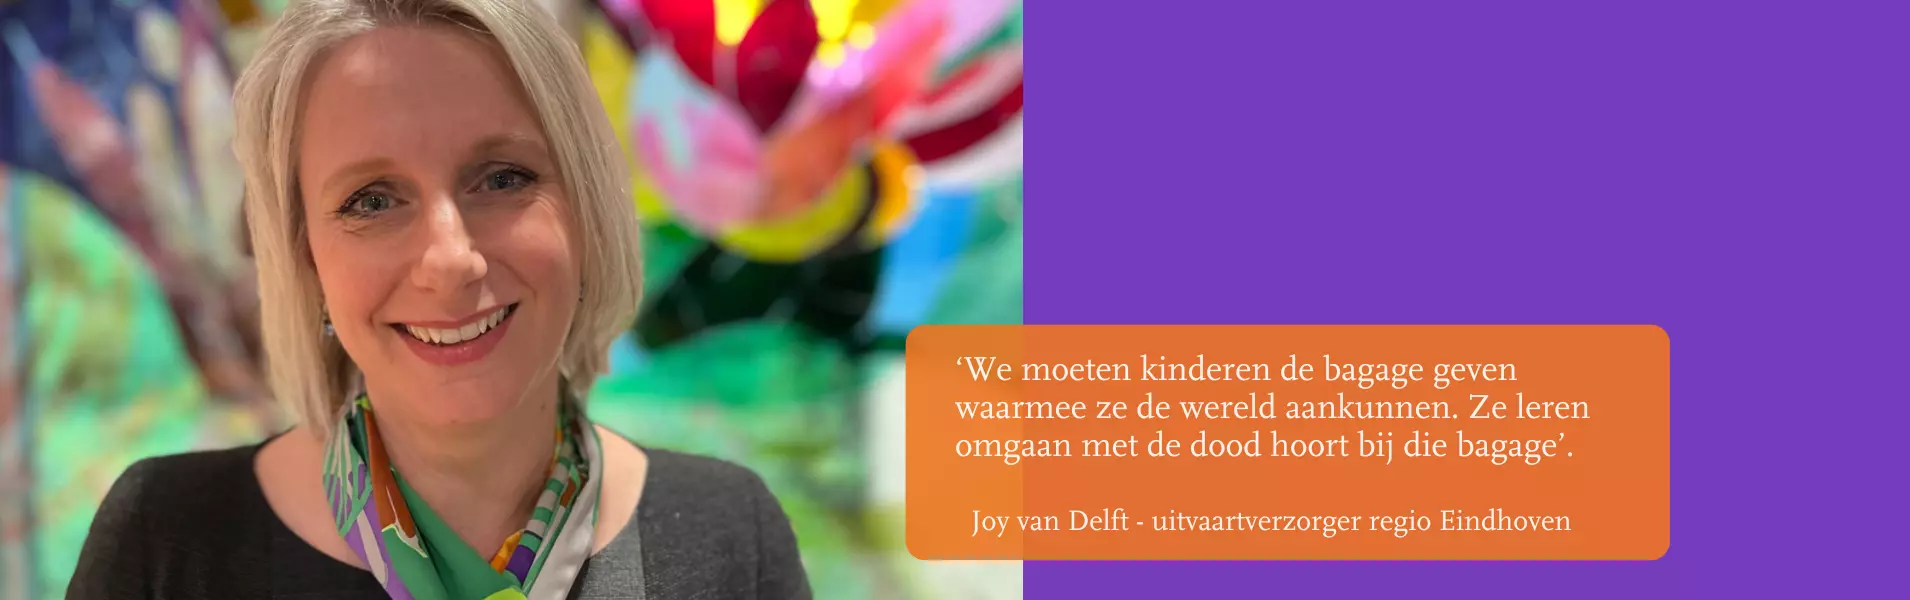 Joy van Delft werkt ruim vijftien jaar als uitvaartverzorger in Brabant in regio Eindhoven. Meer over haar werk lees je hier.